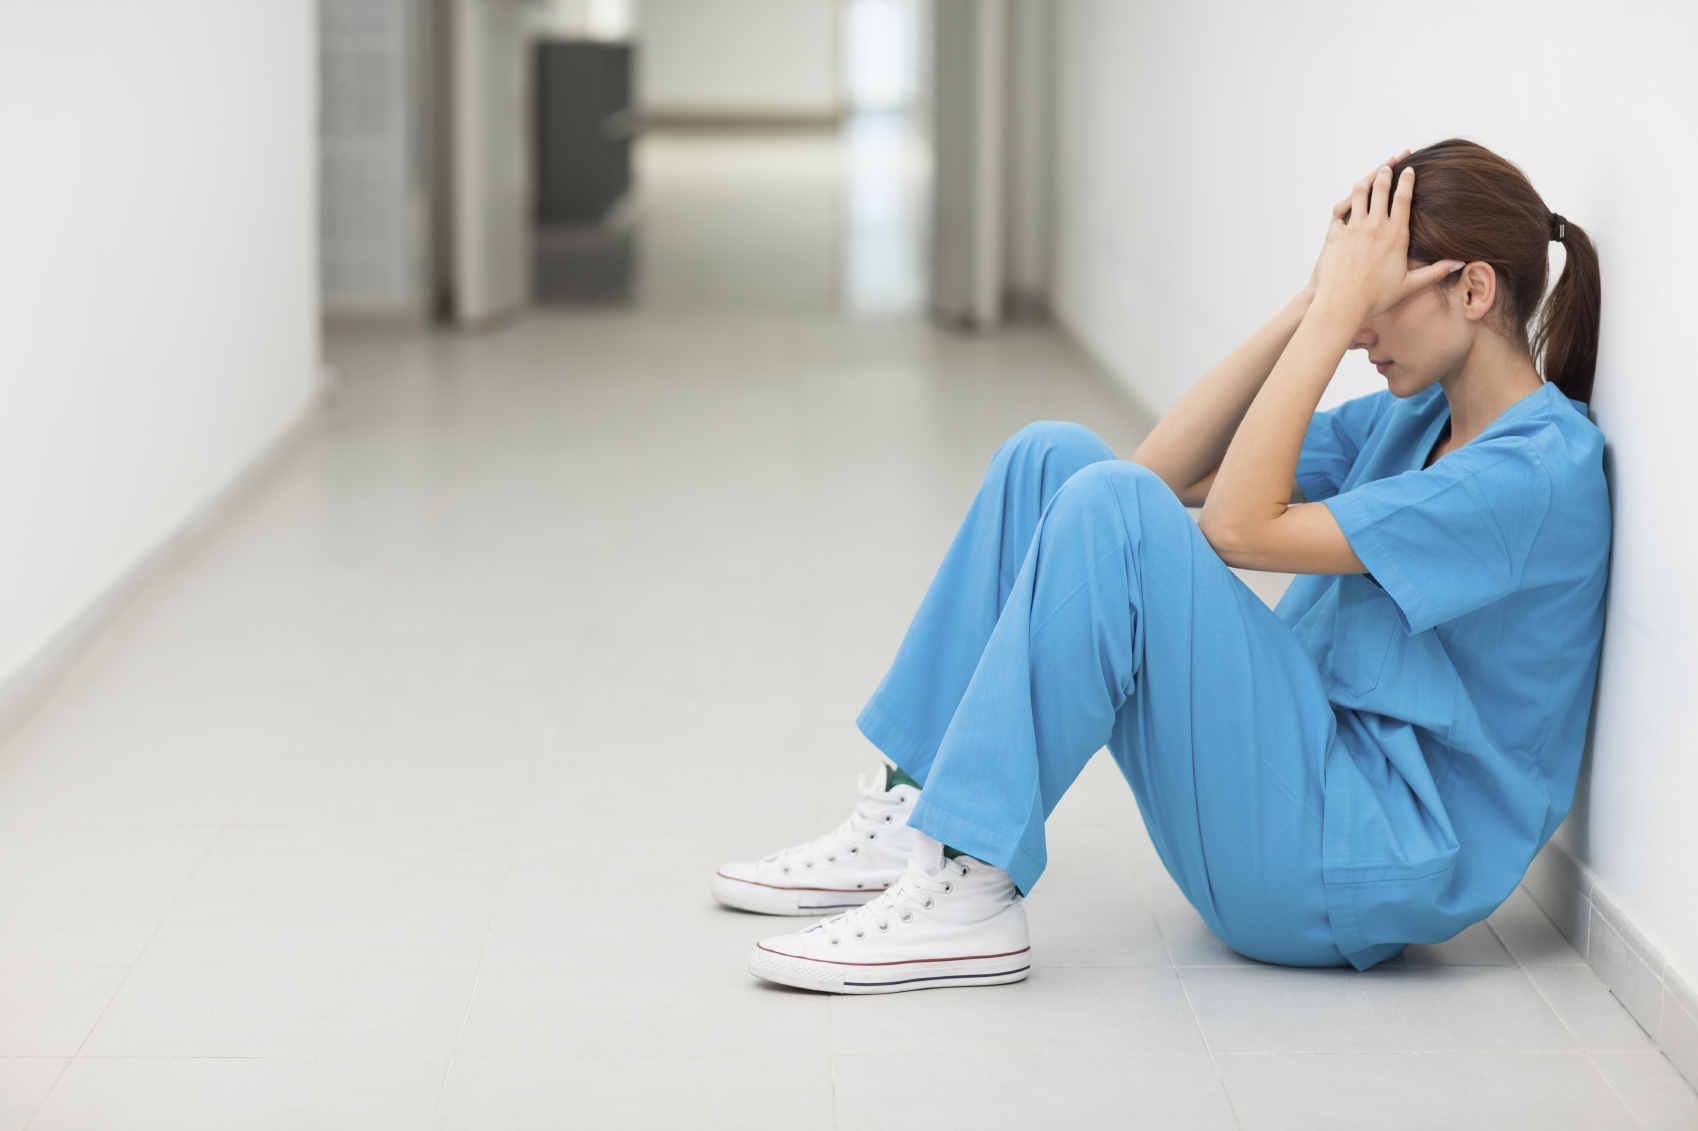 Κραυγή αγωνίας από τους νοσηλευτές: «Δεν αντέχουμε άλλο!»